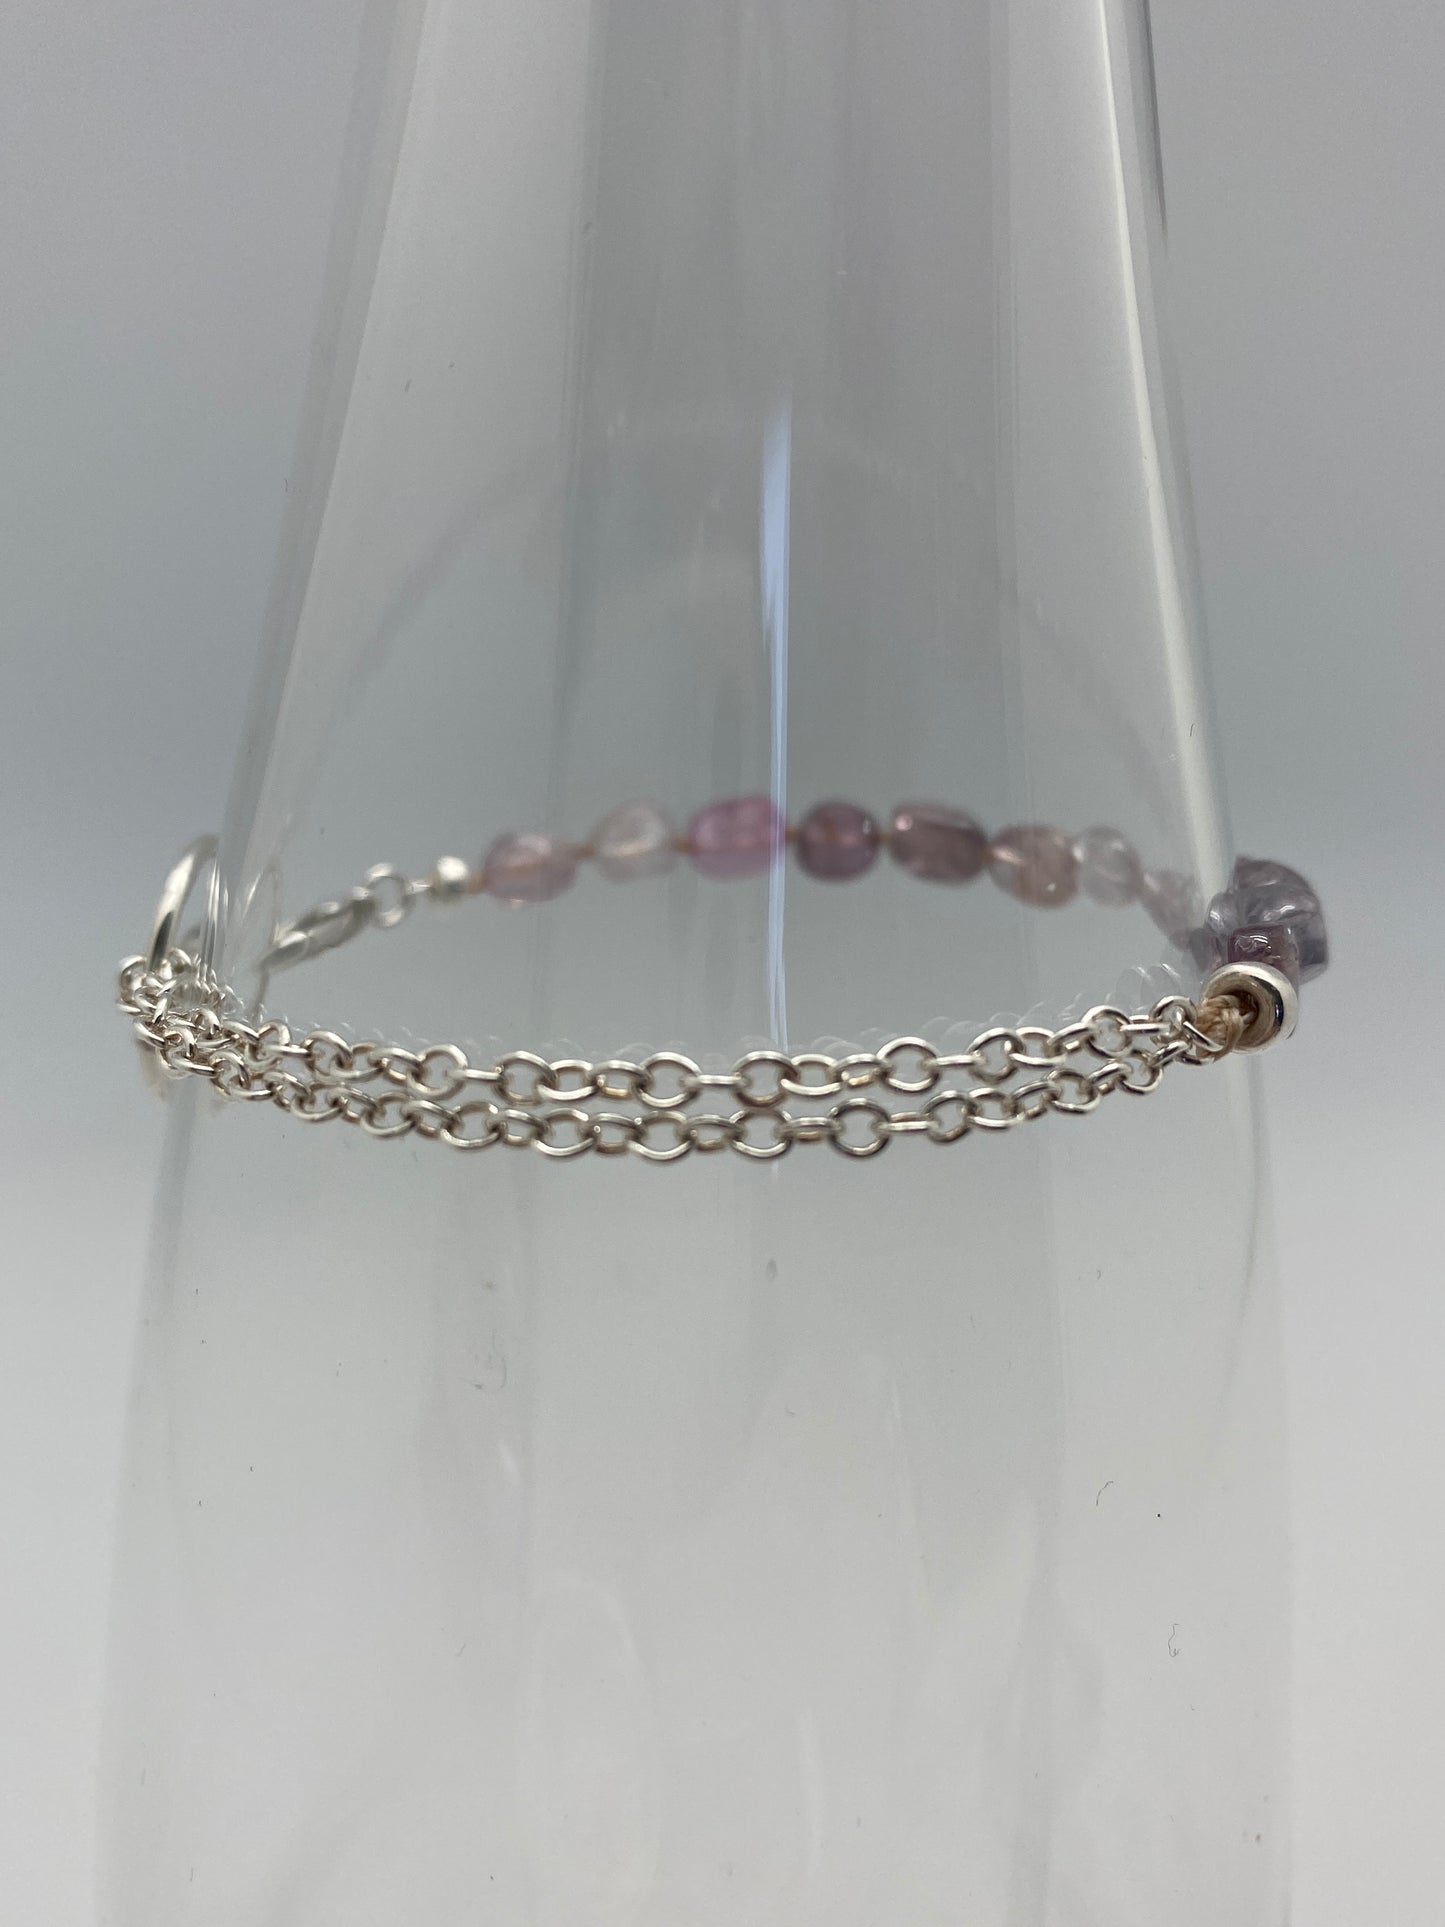 Yin Yang Purple Spinel bracelet